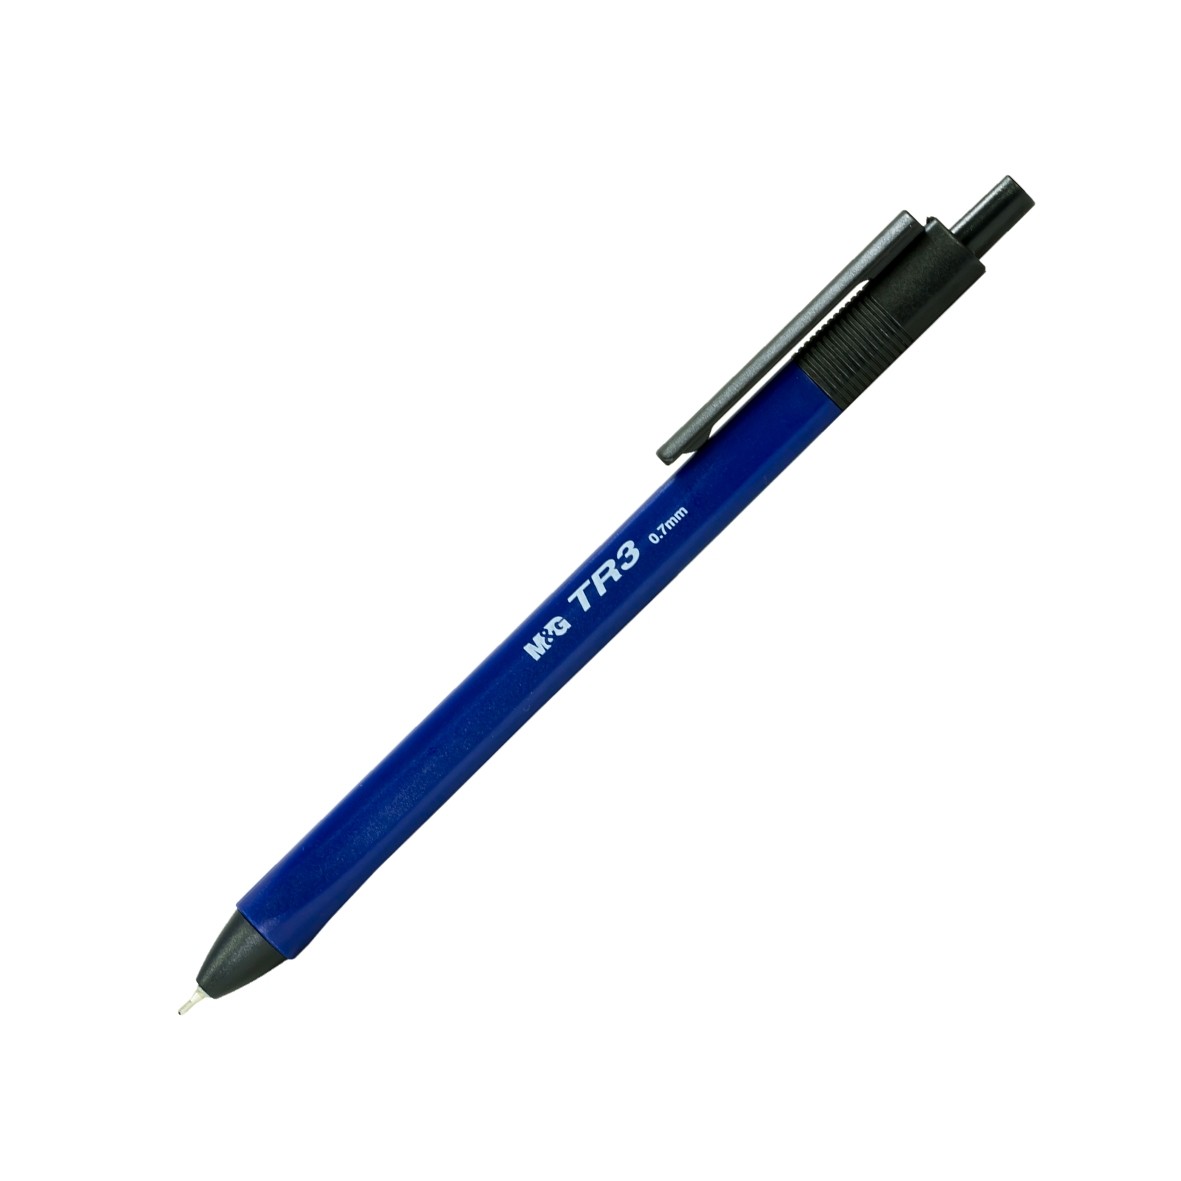 Kemijska olovka TR-3 polugel – vrh 0,7 mm